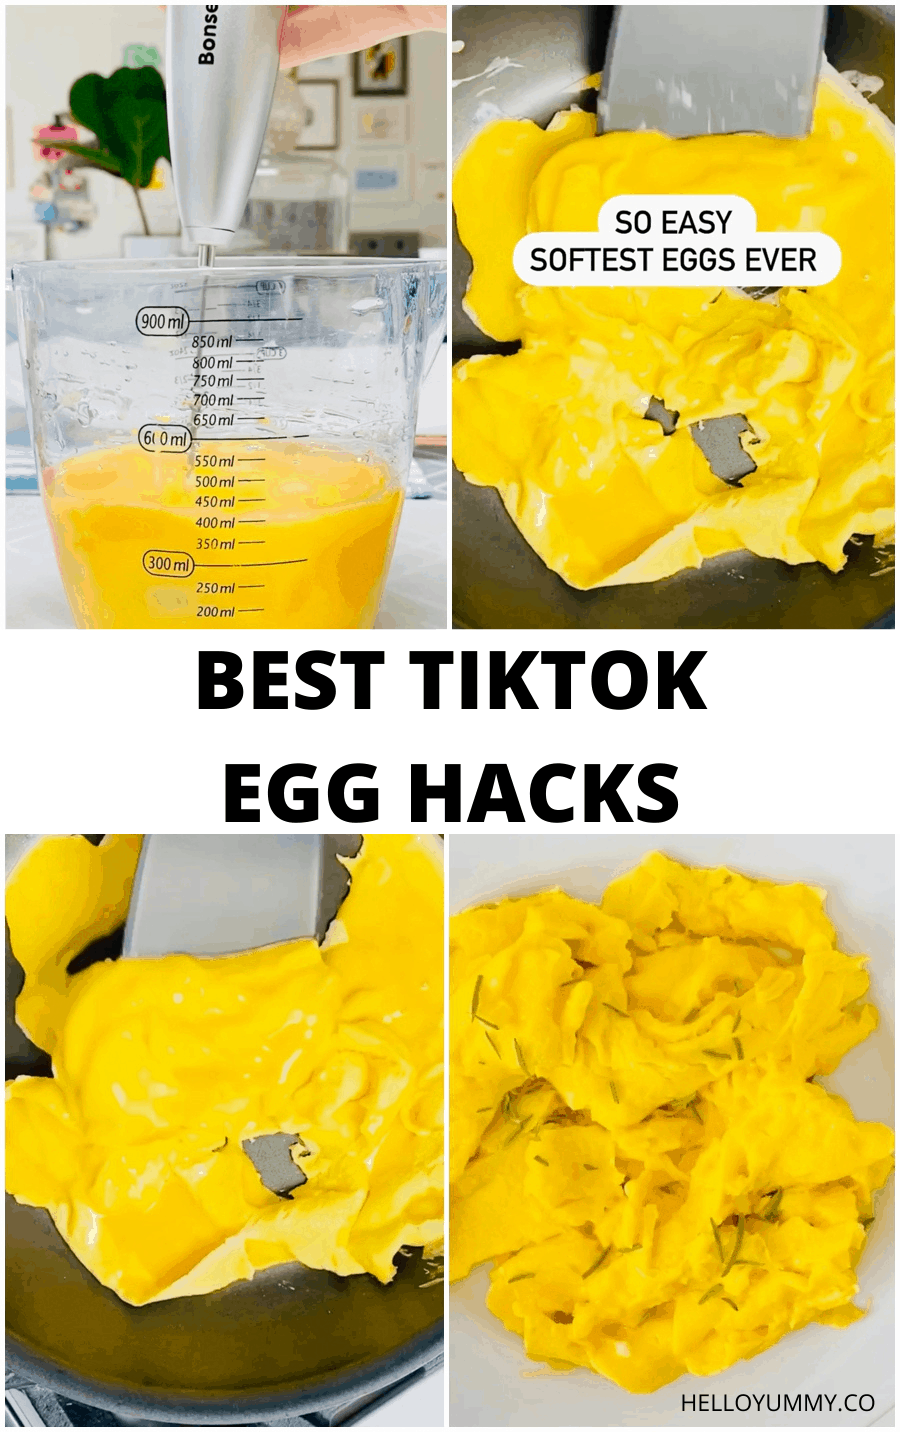 Best TikTok Egg Hacks